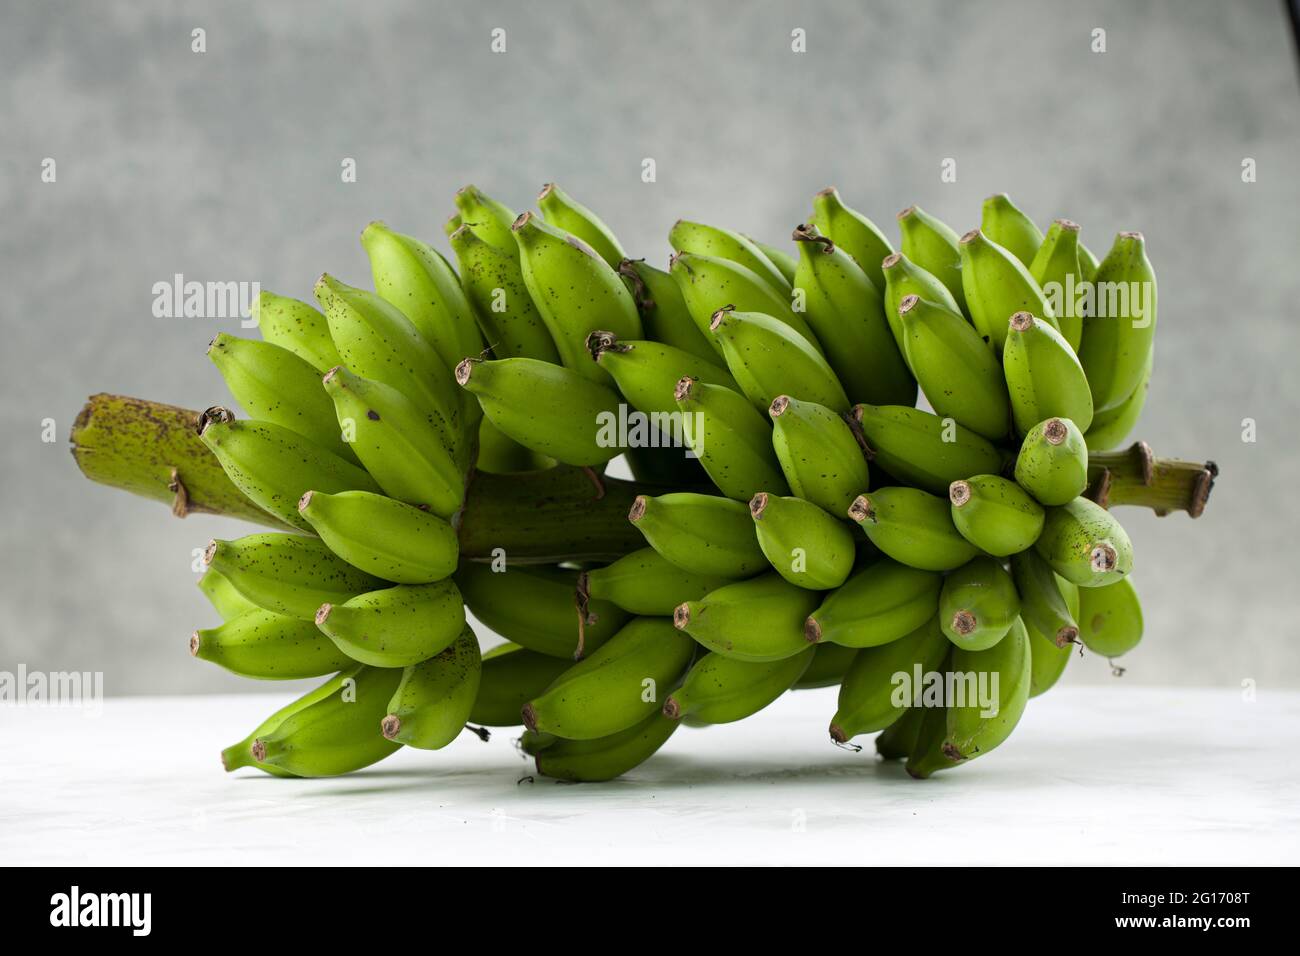 Mazzetto di banana grezza o di banana verde posto su una superficie bianca con fondo grigio testurizzato, isolato. Foto Stock